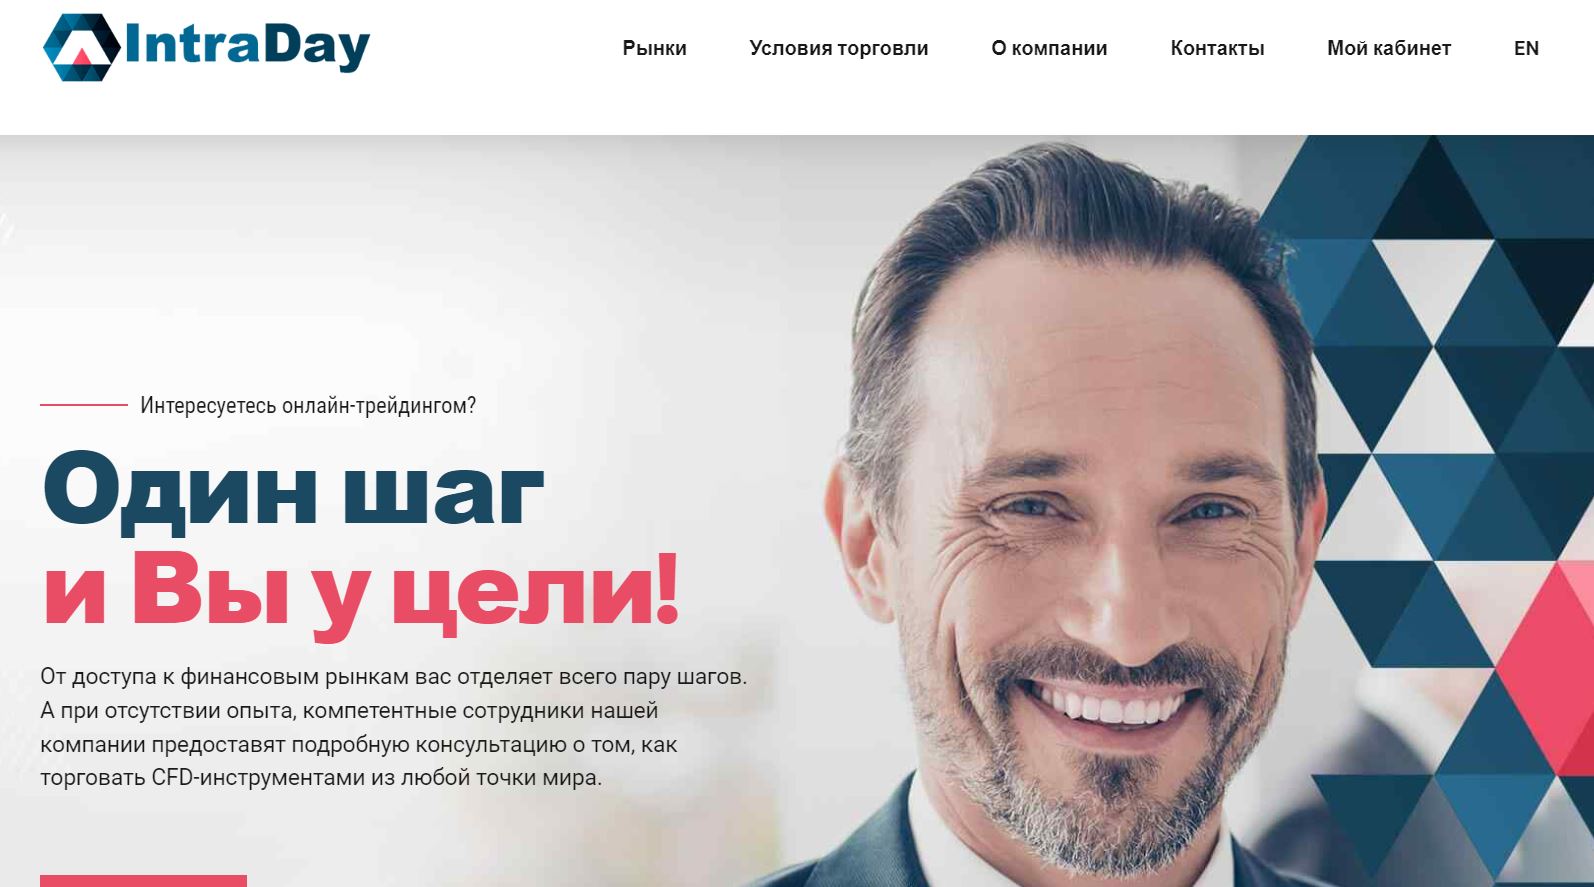 Intraday Ltd — уловки аферистов